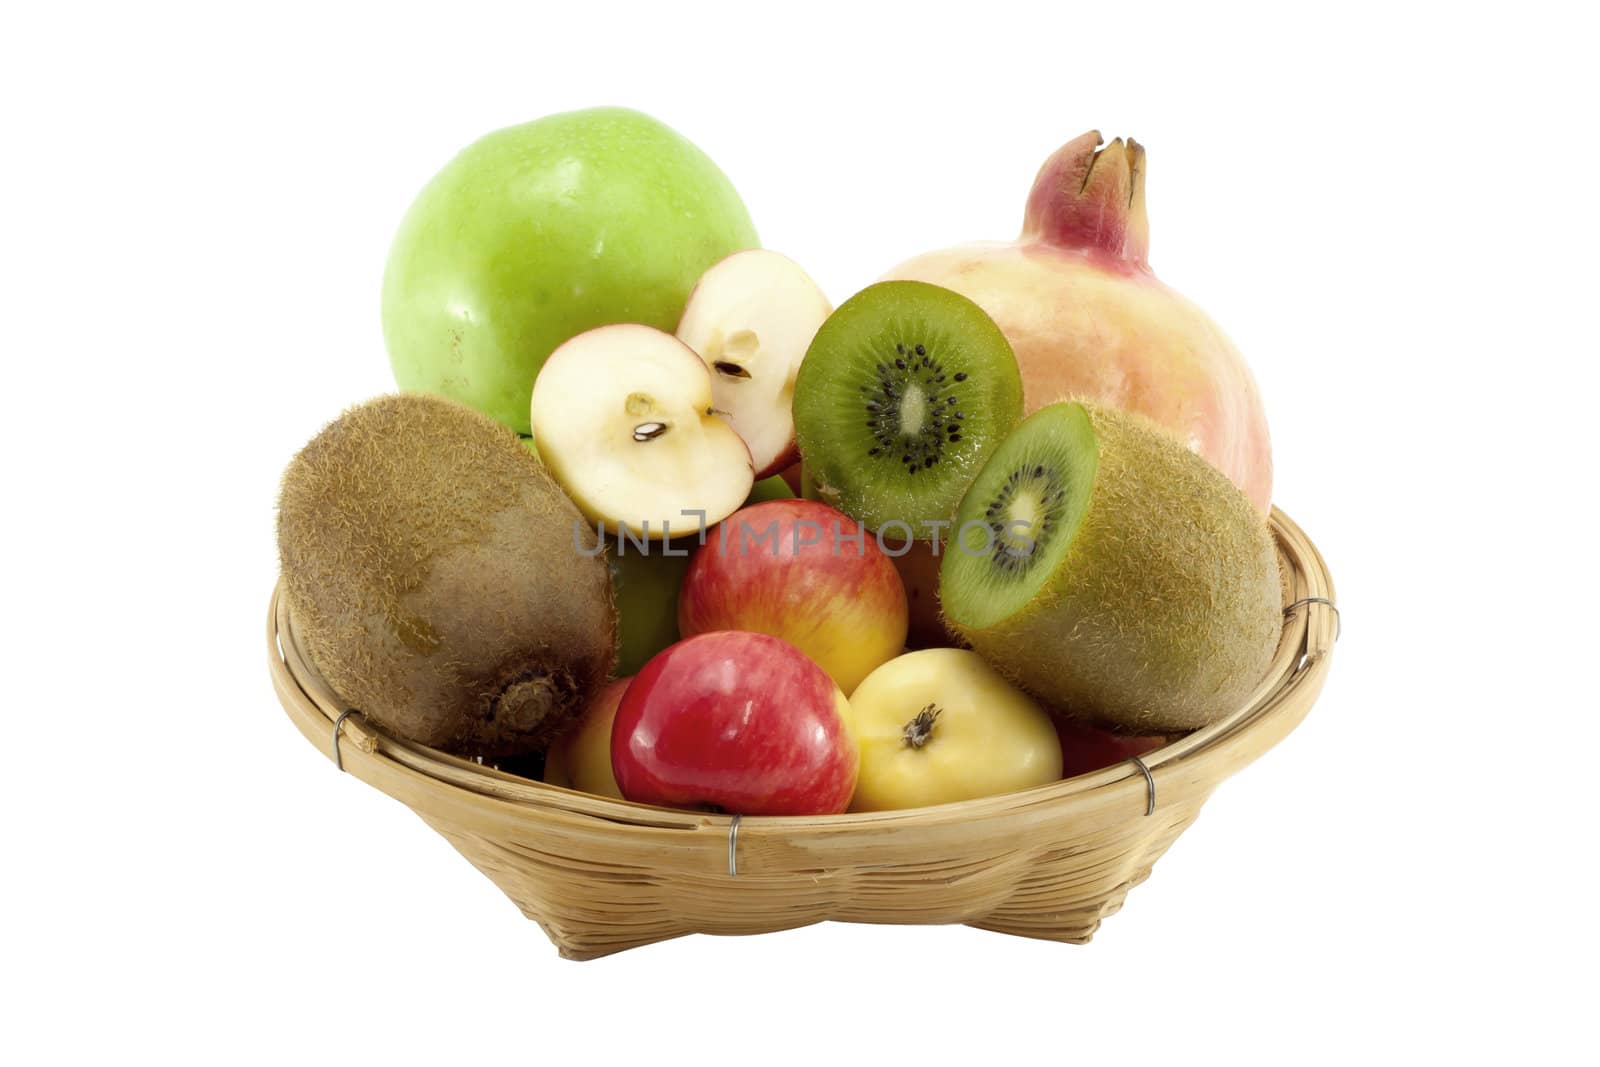 Mix fruits on basket







Mix fruit on basket with white background.